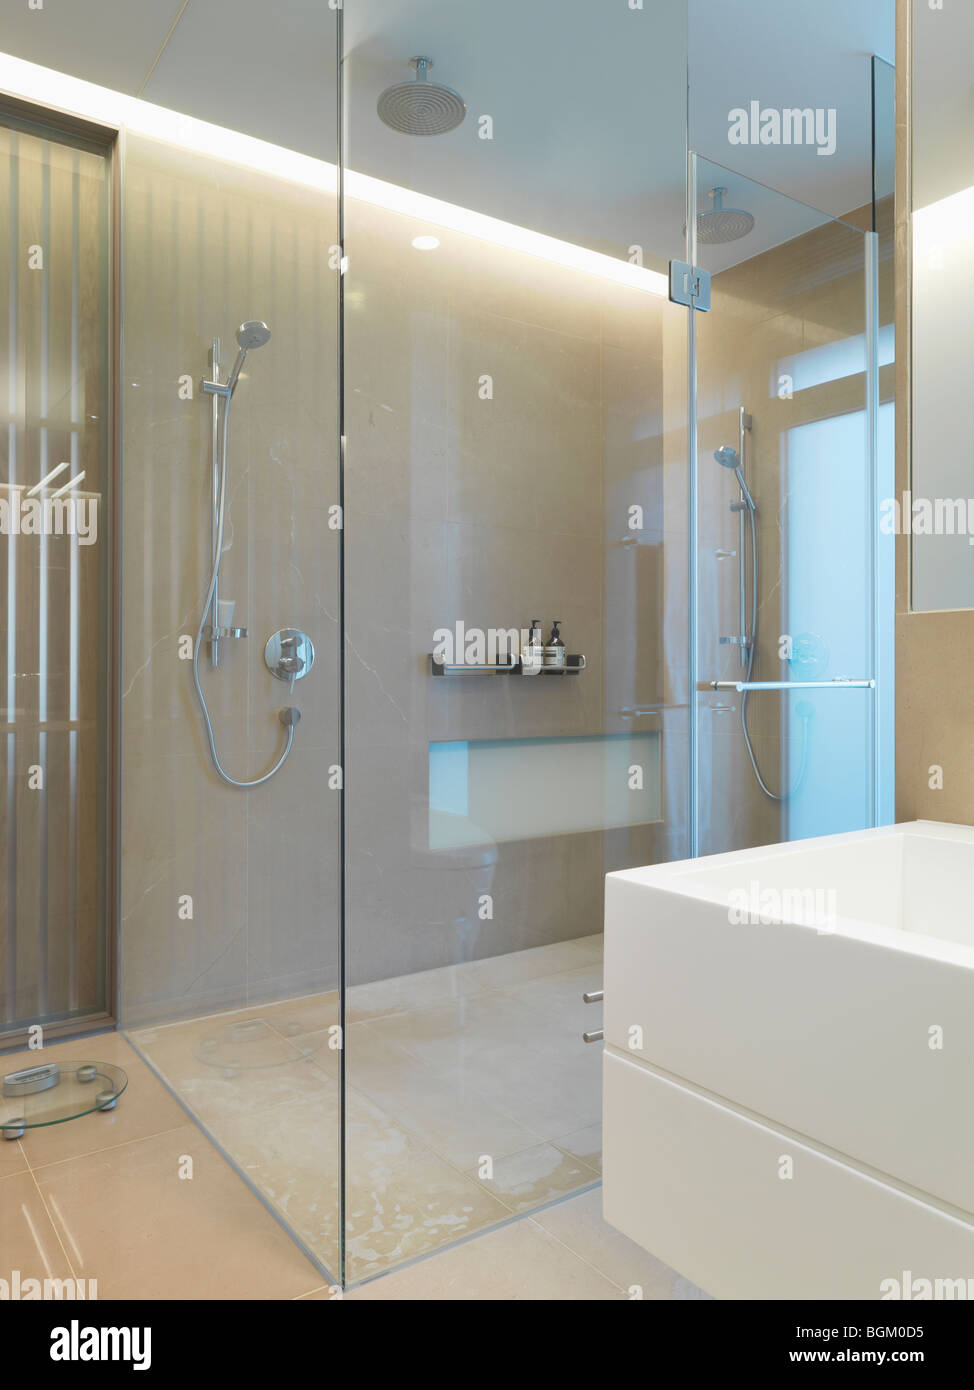 Grande douche de verre dans une salle de bains moderne Banque D'Images